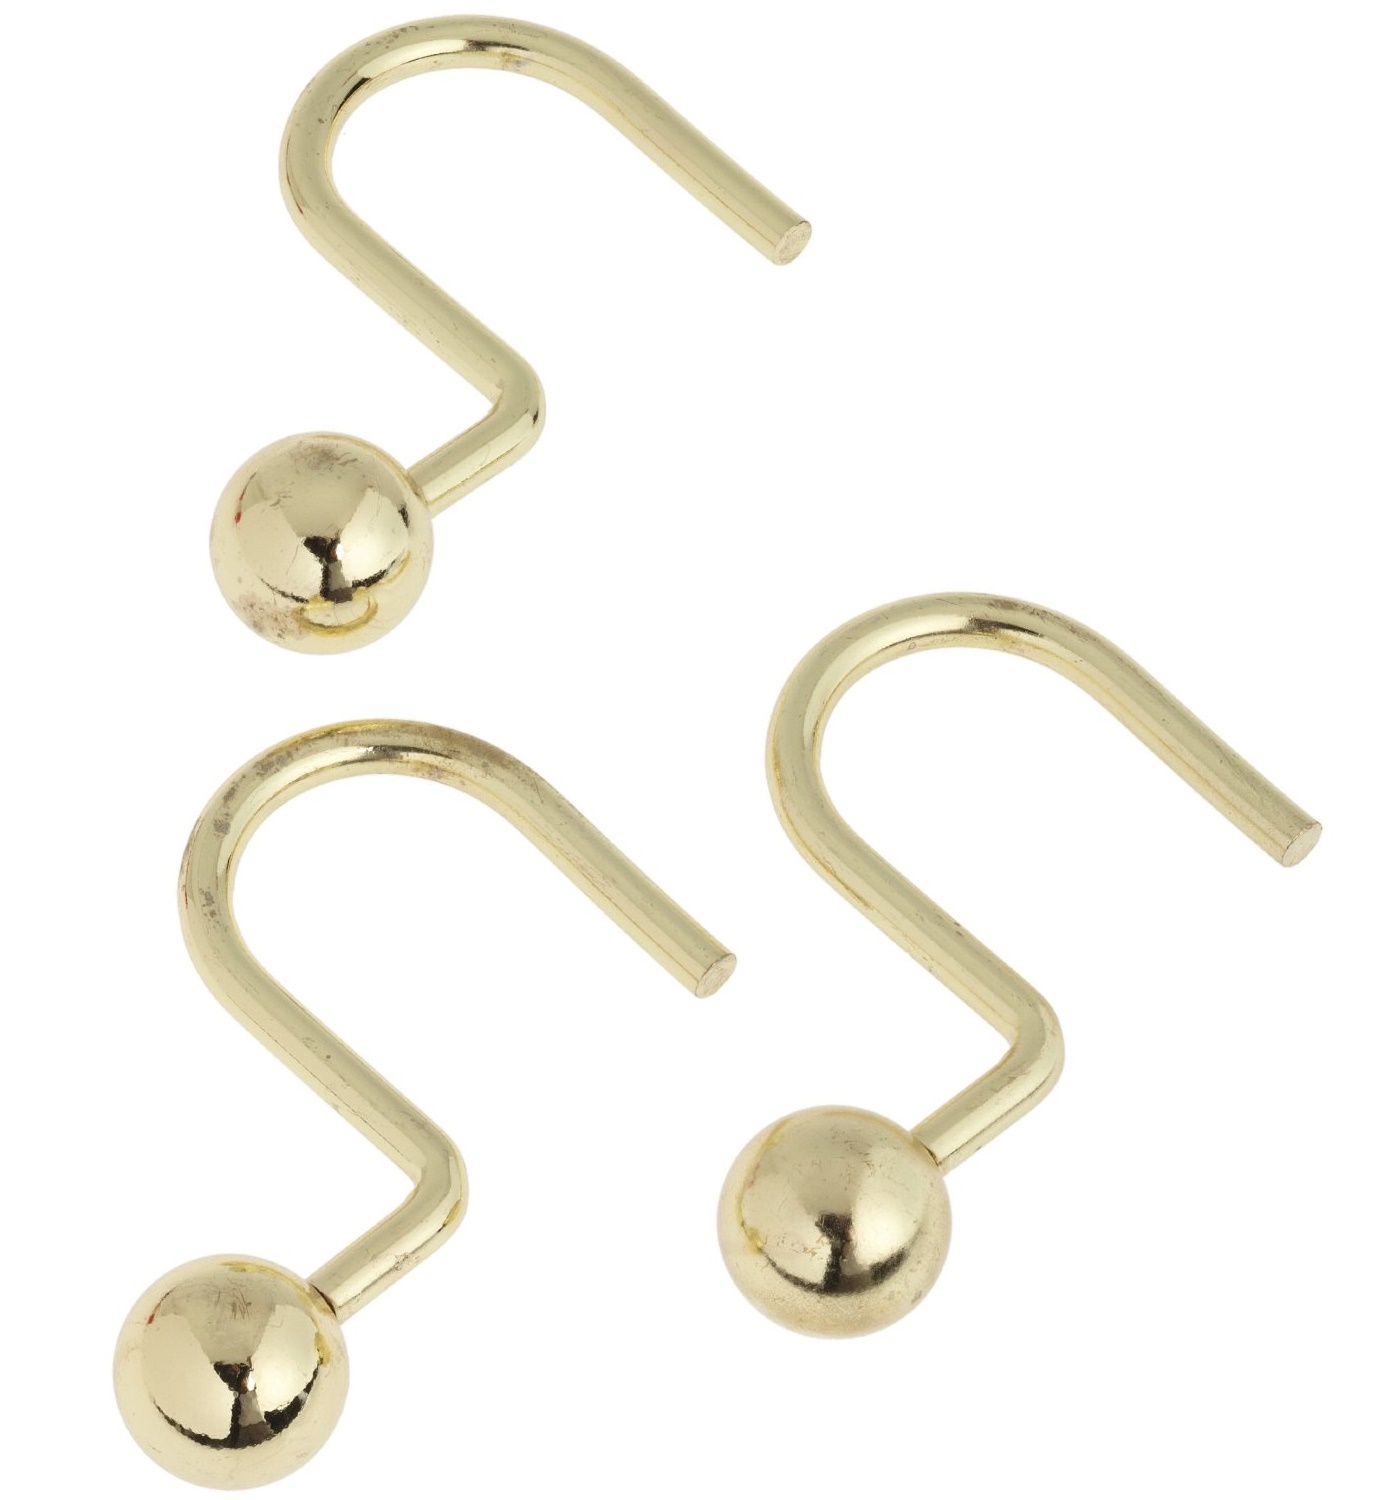 фото Кольца для шторки в ванной Carnation Home Fashions Ball Type Hook, SLM-BAL/64, золотой